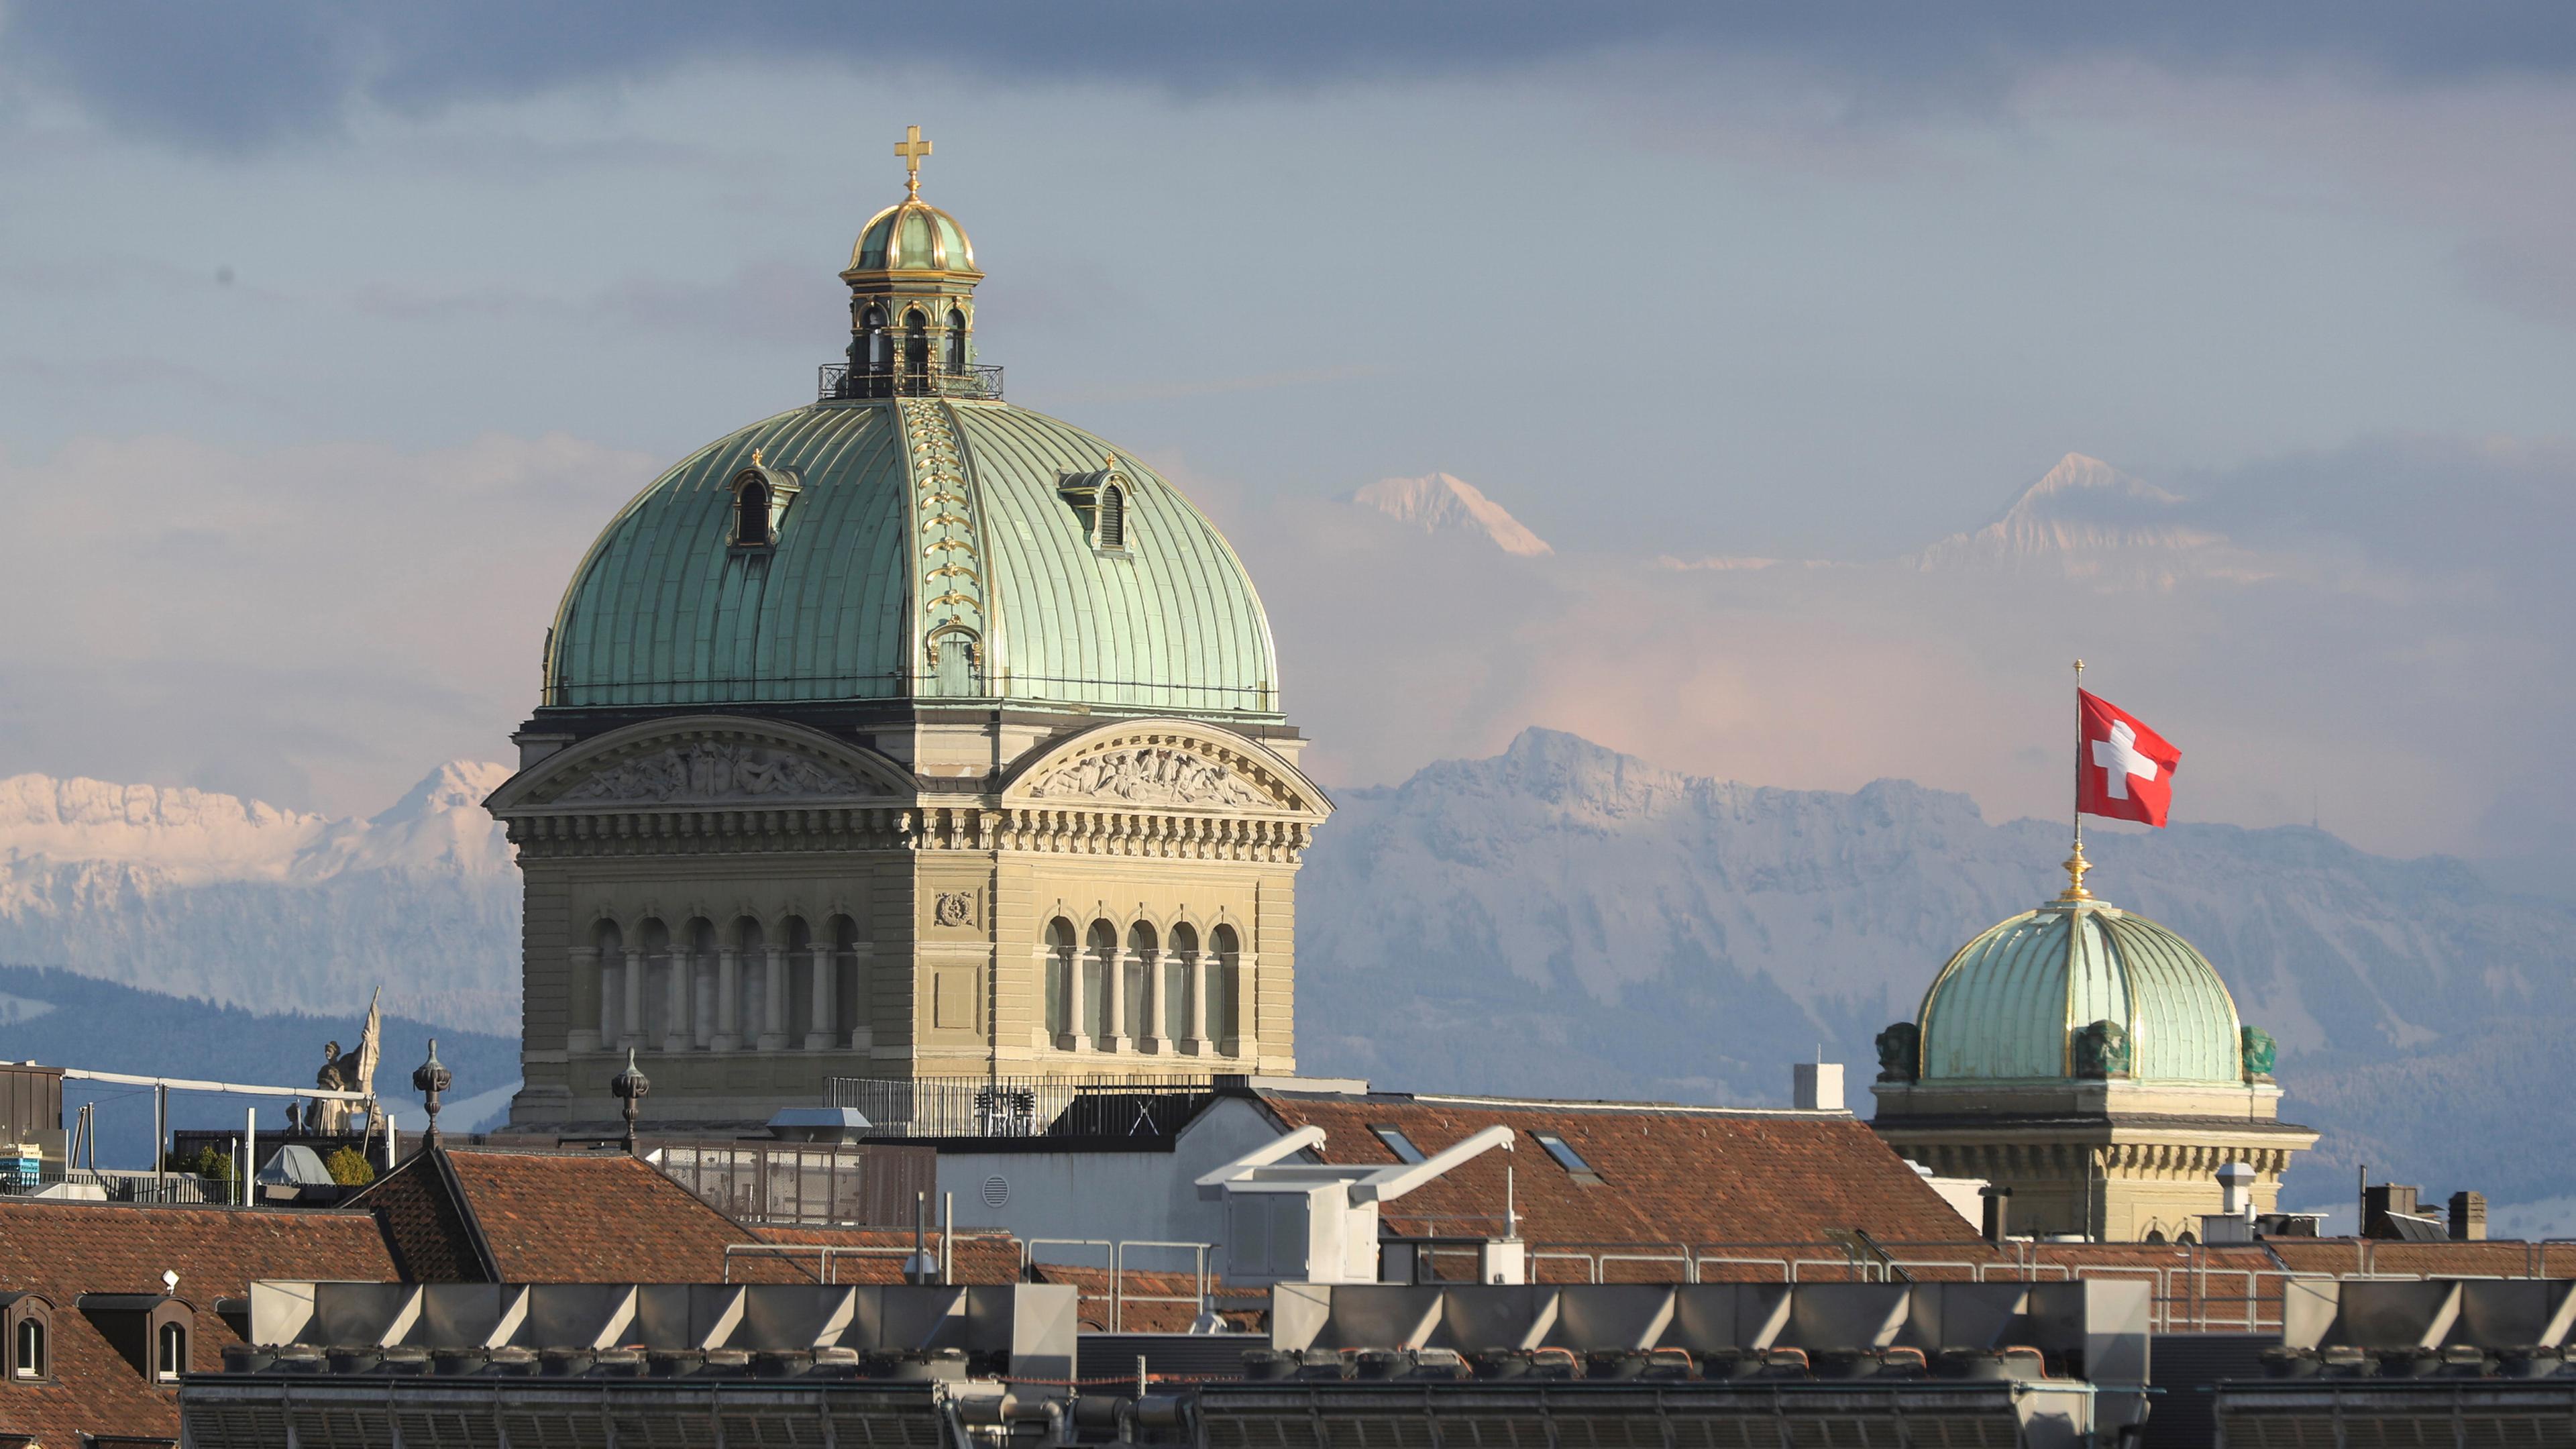 Zu sehen ist das schweizer Bundeshaus, mit den Alpen im Hintergrund.